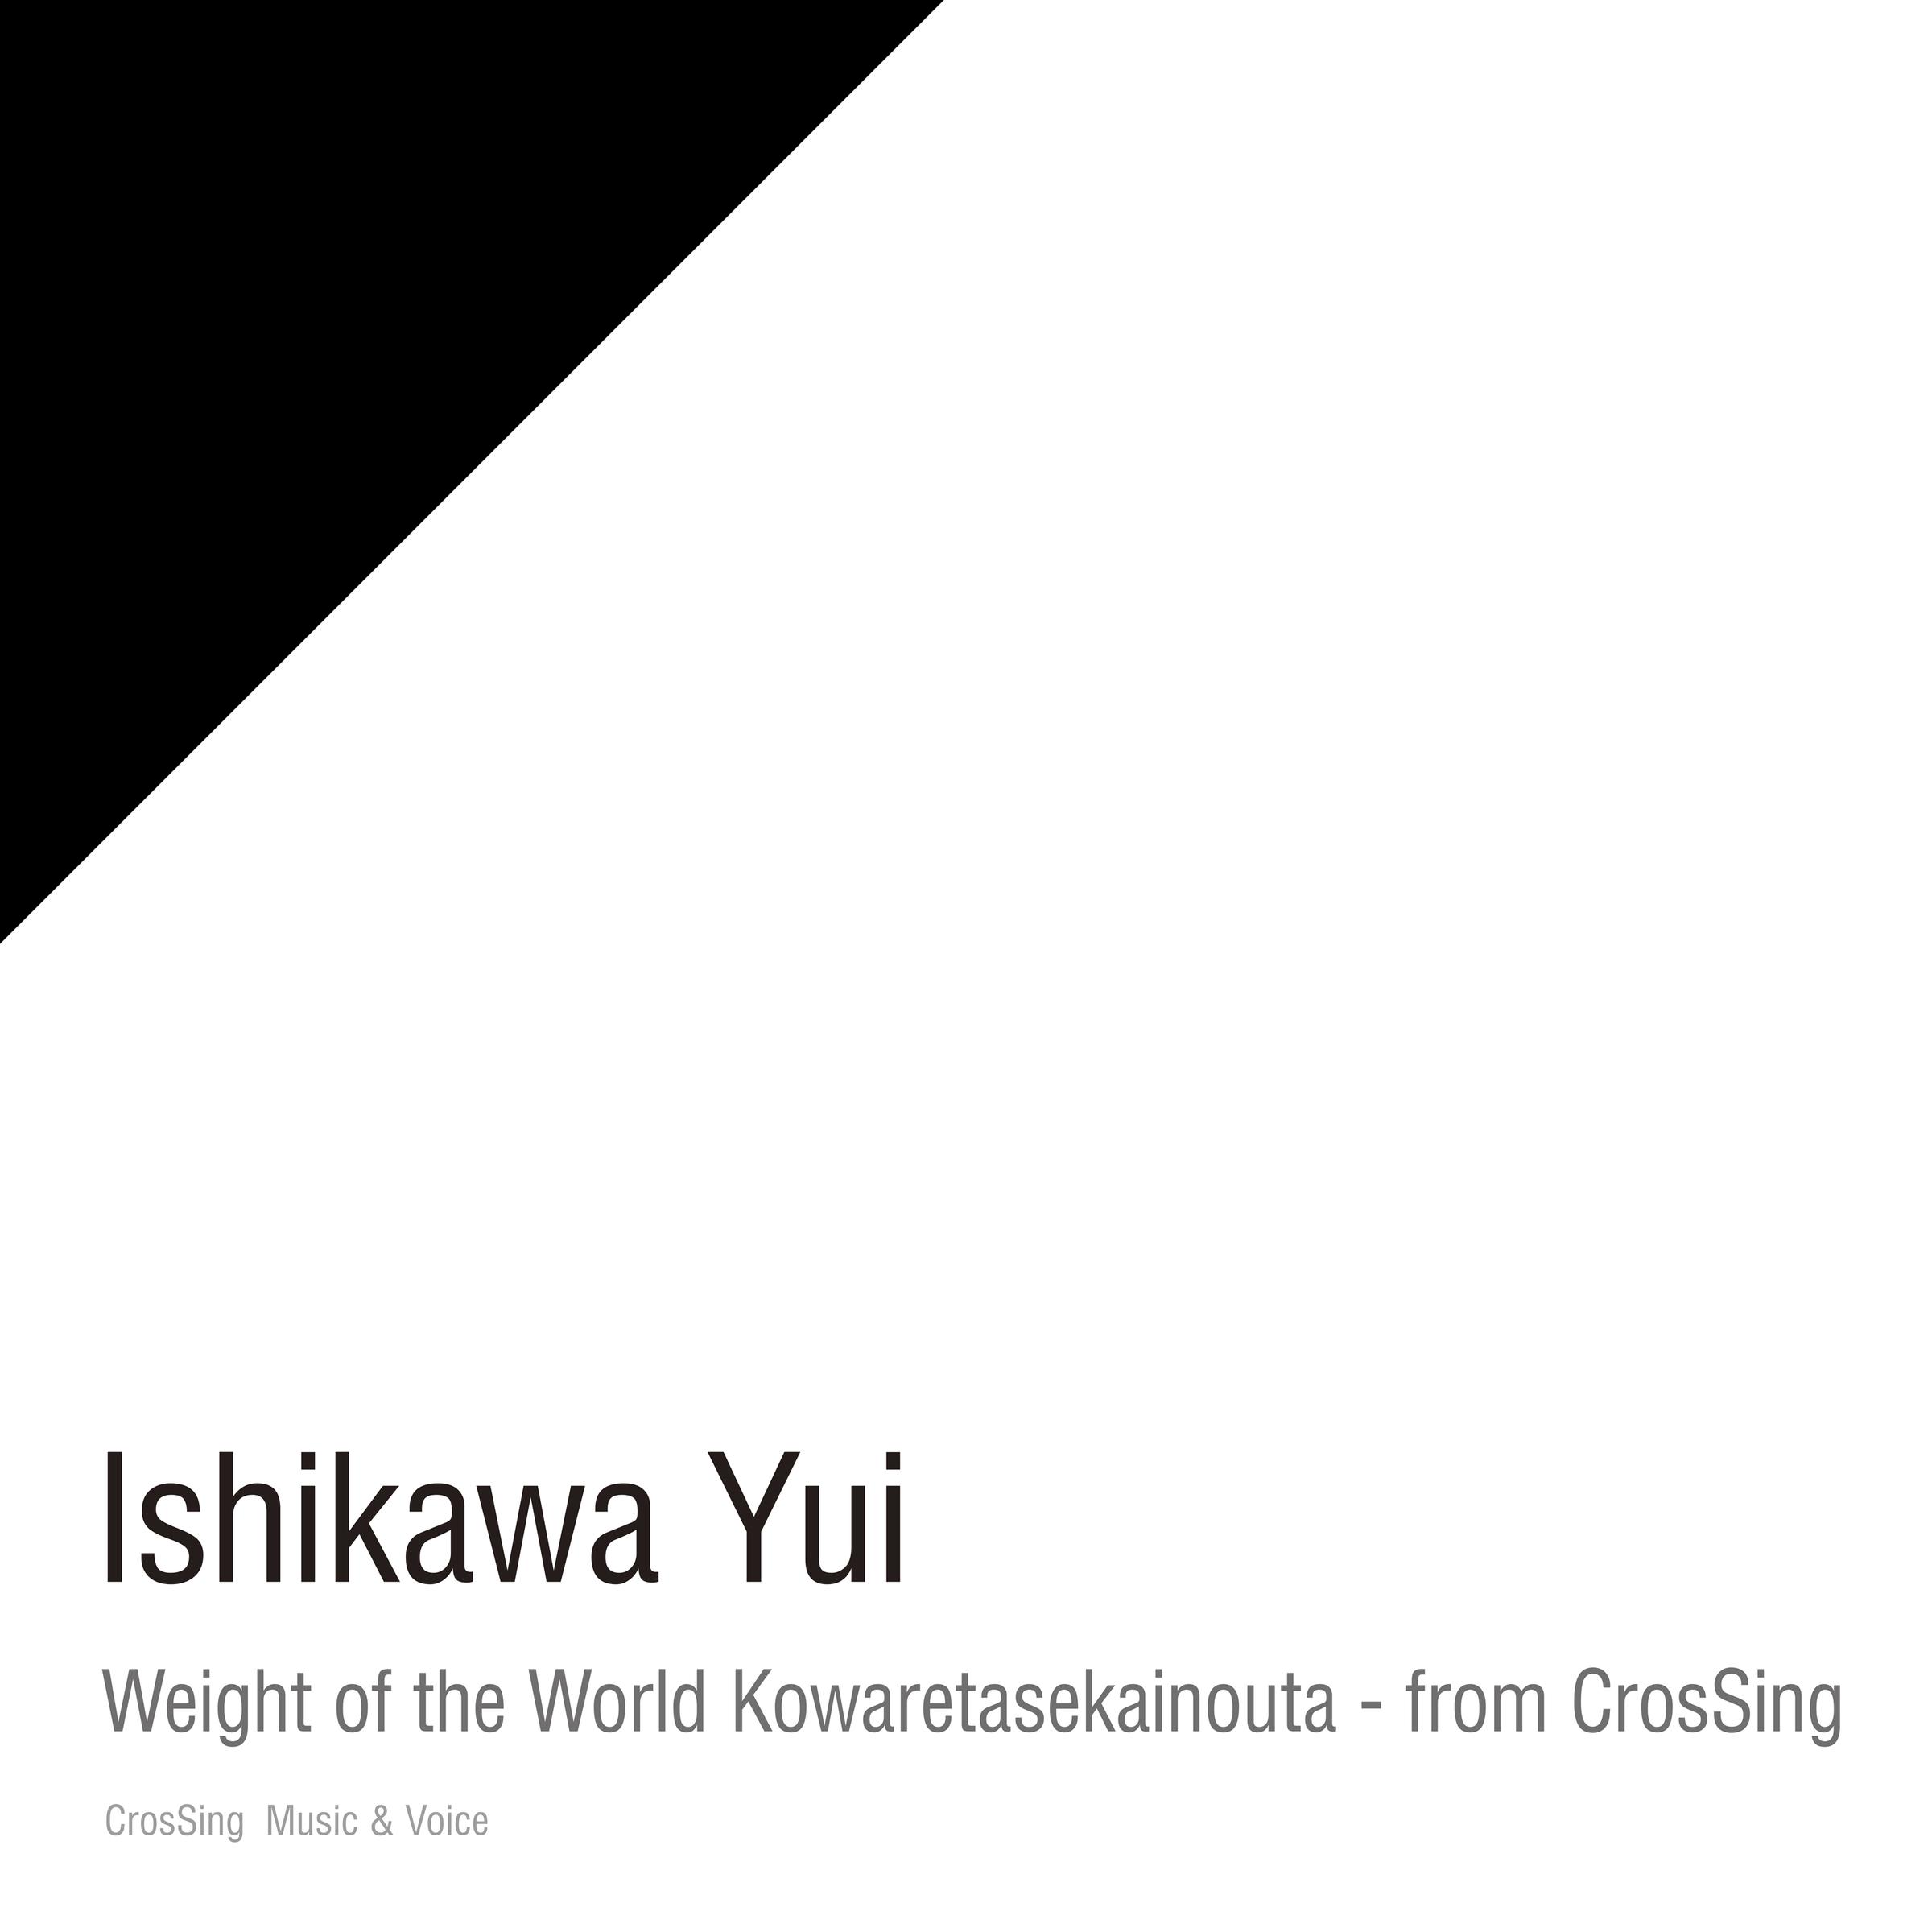 石川由依 - Weight of the World/壊レタ世界ノ歌 - from CrosSing (Instrumental)